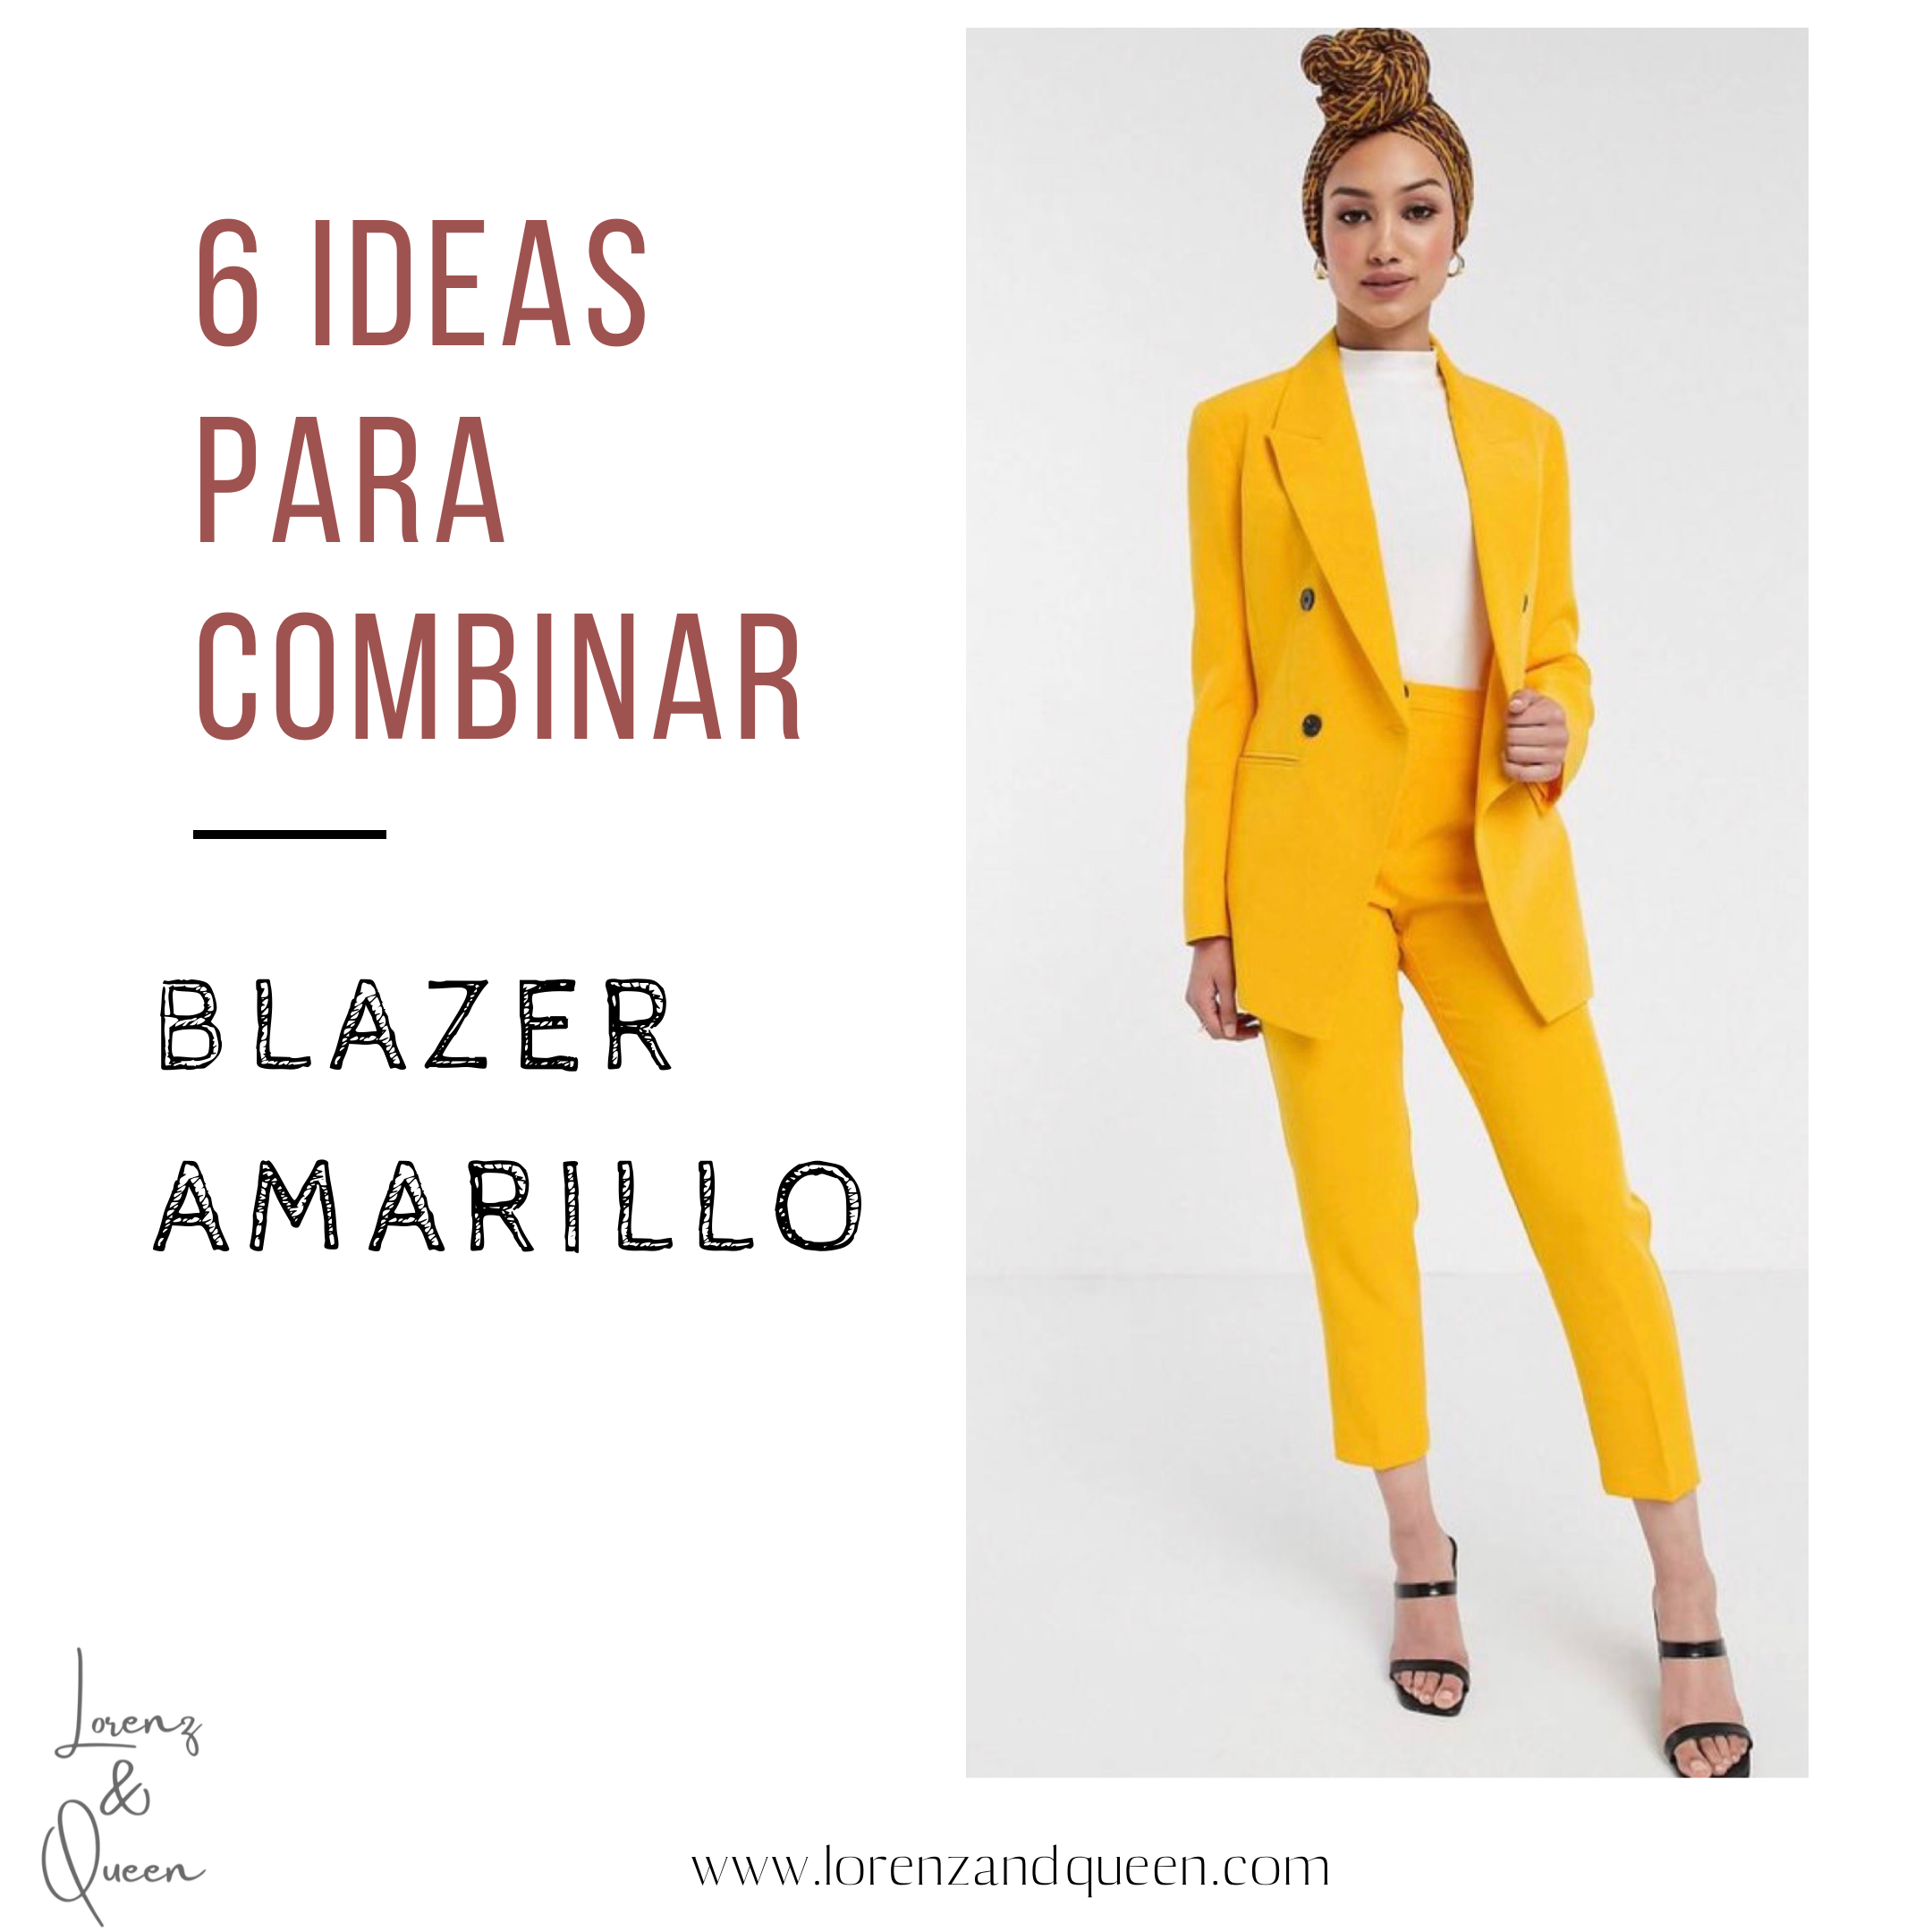 6 IDEAS PARA COMBINAR BLAZER AMARILLO – Lorenz&Queen